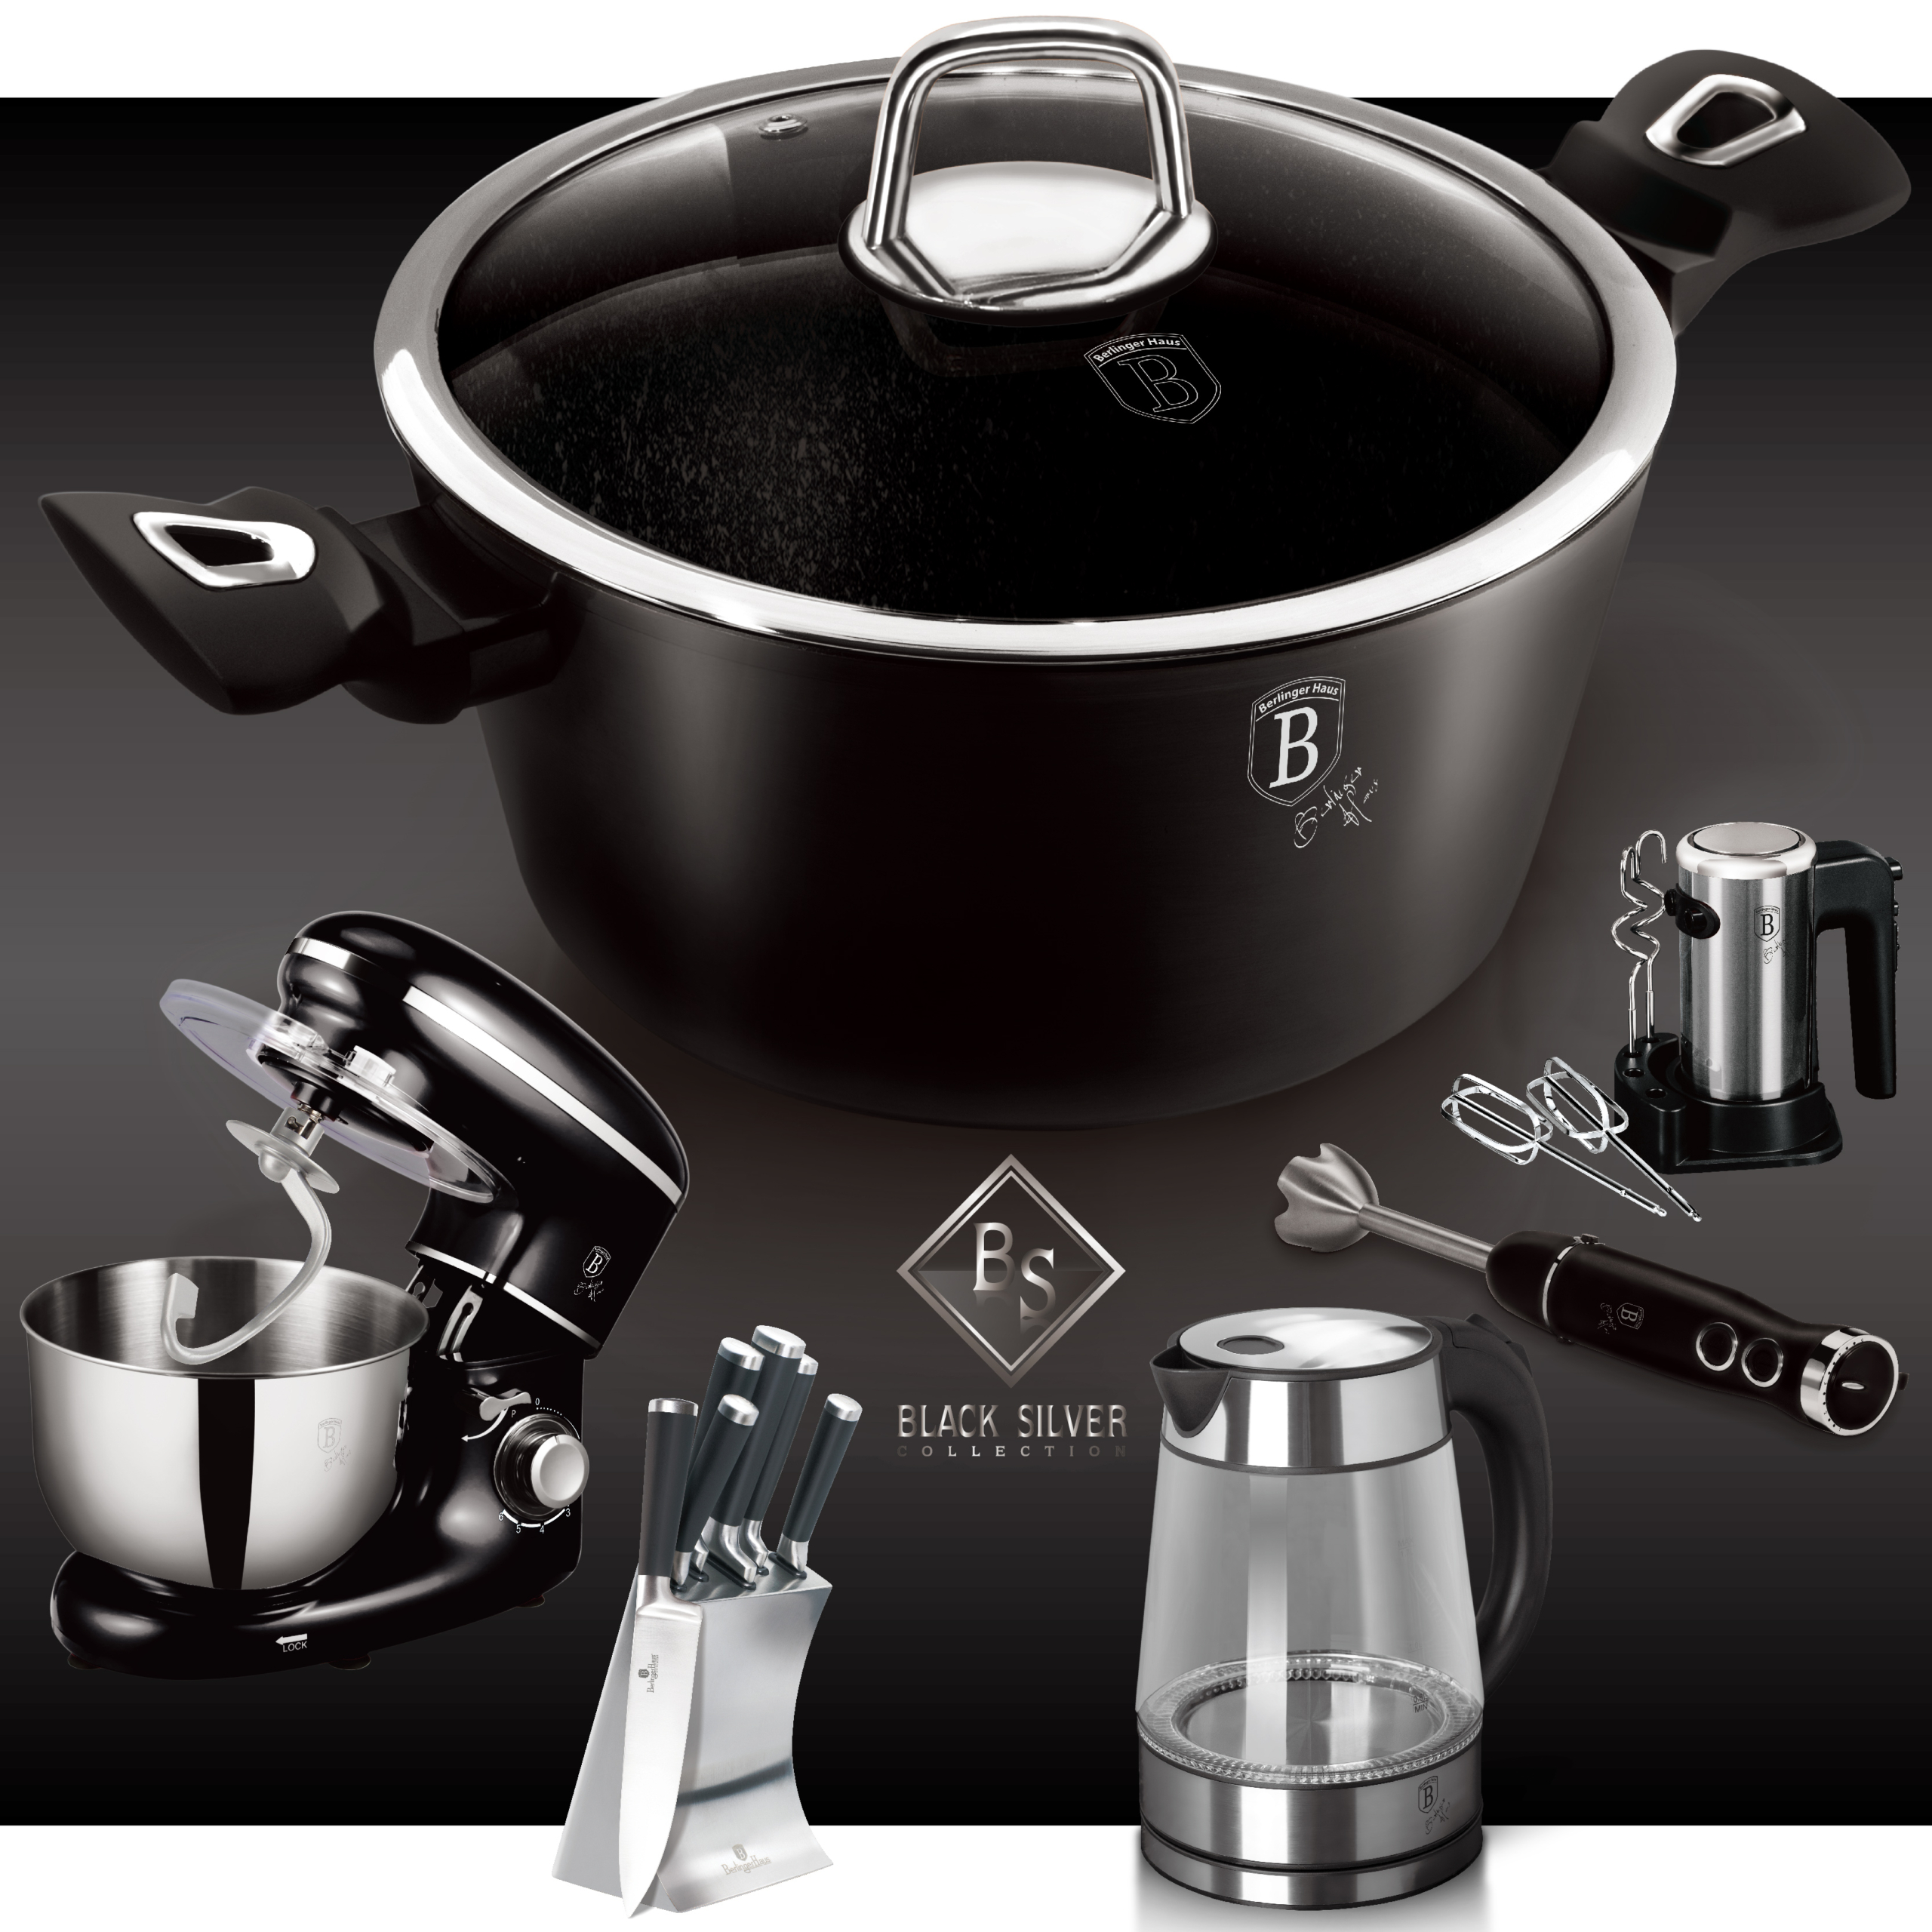 BerlingerHaus Black Silver Collection termék család oldal a főbb konyhai termékekkel